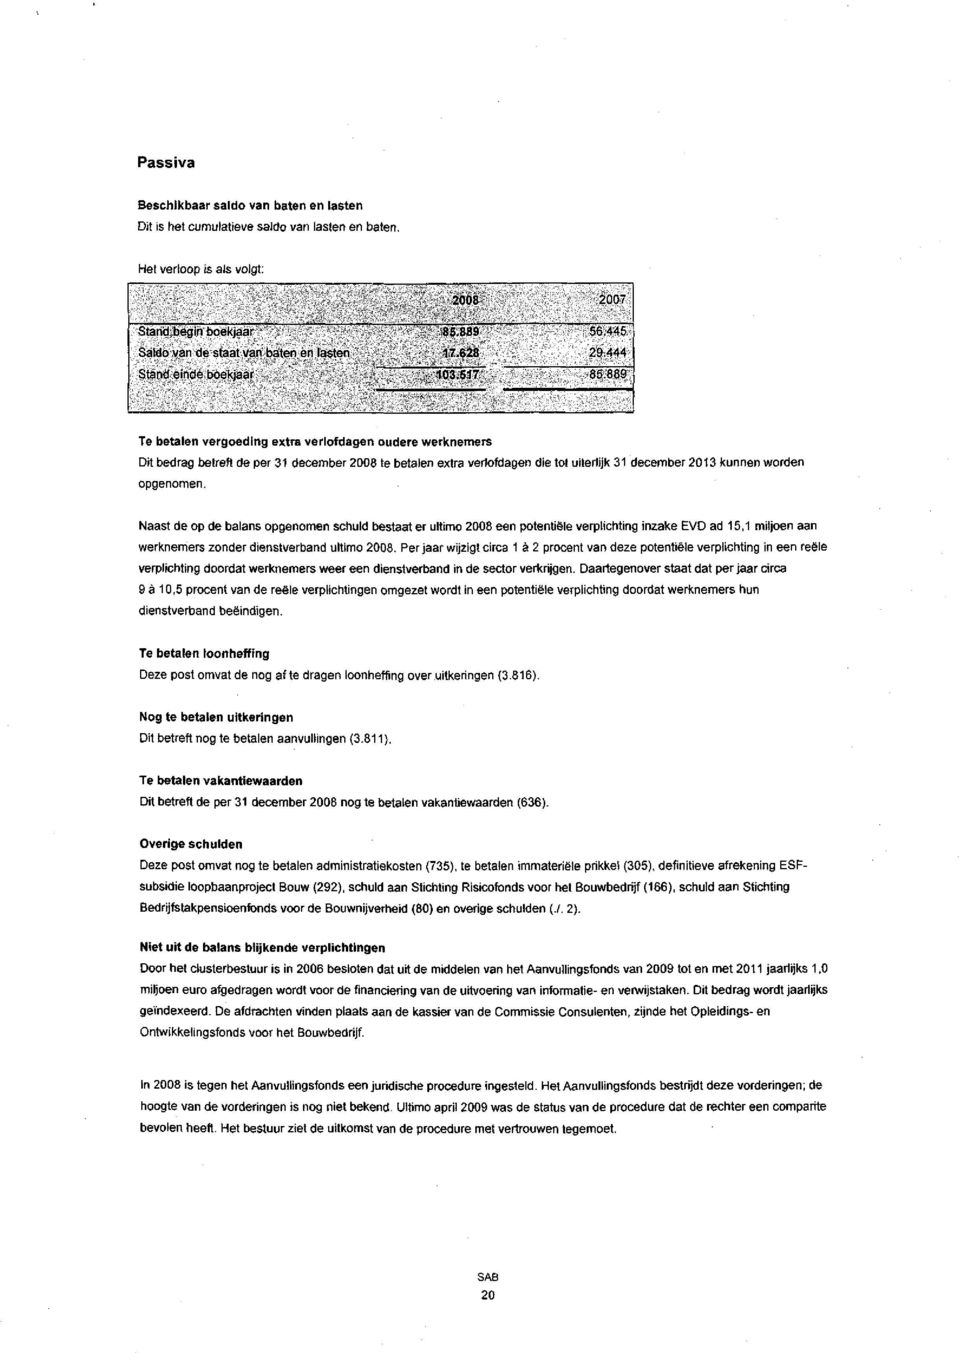 889 Te betalen vergoeding extra verlofdagen oudere werknemers Dit bedrag betreft de per 31 december 2008 te betalen extra verlofdagen die tot uiterlijk 31 december 2013 kunnen worden opgenomen.